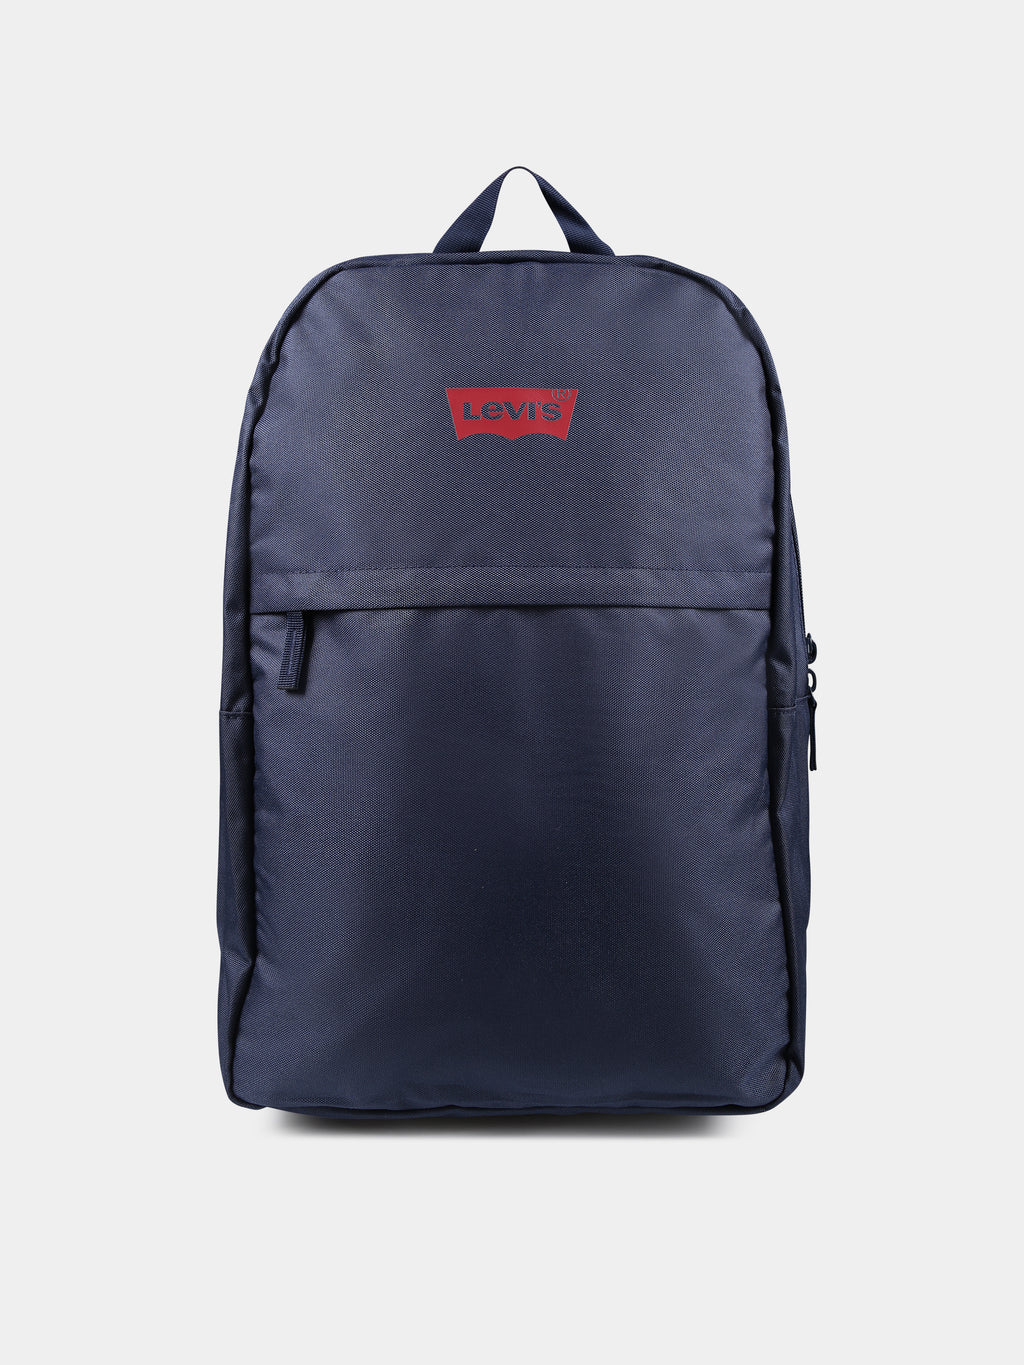 Blue backpack for kids